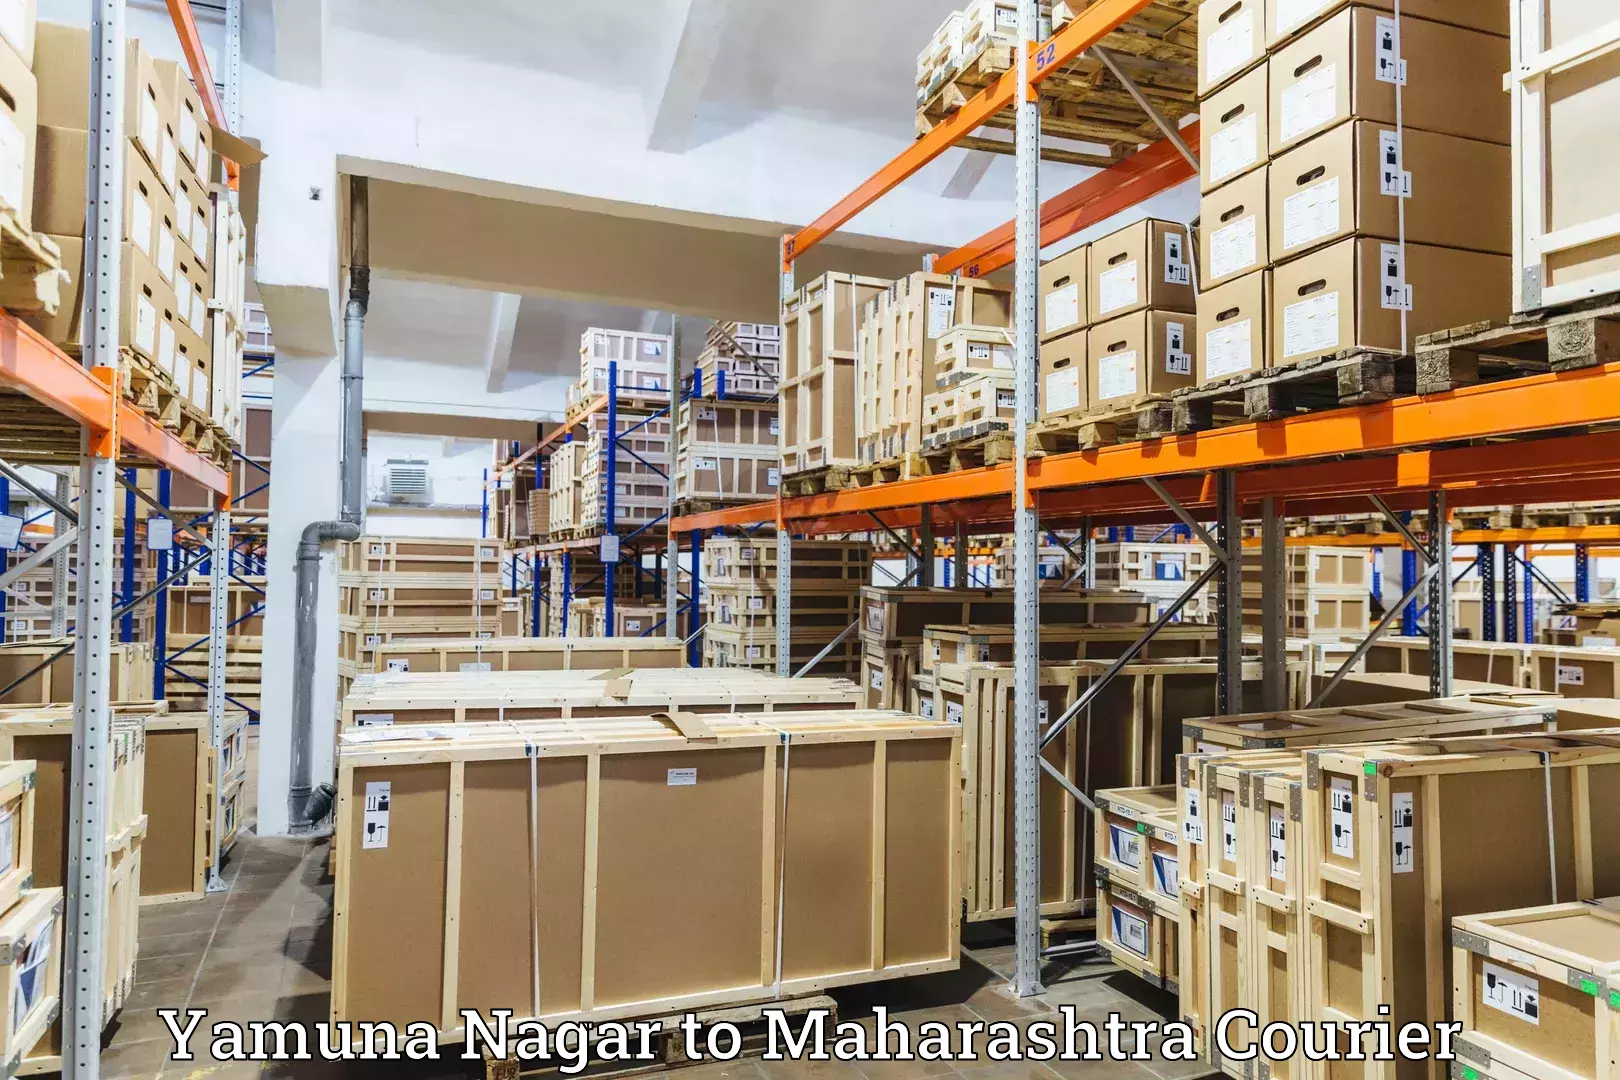 Online shipping calculator in Yamuna Nagar to Jawaharlal Nehru Port Nhava Sheva